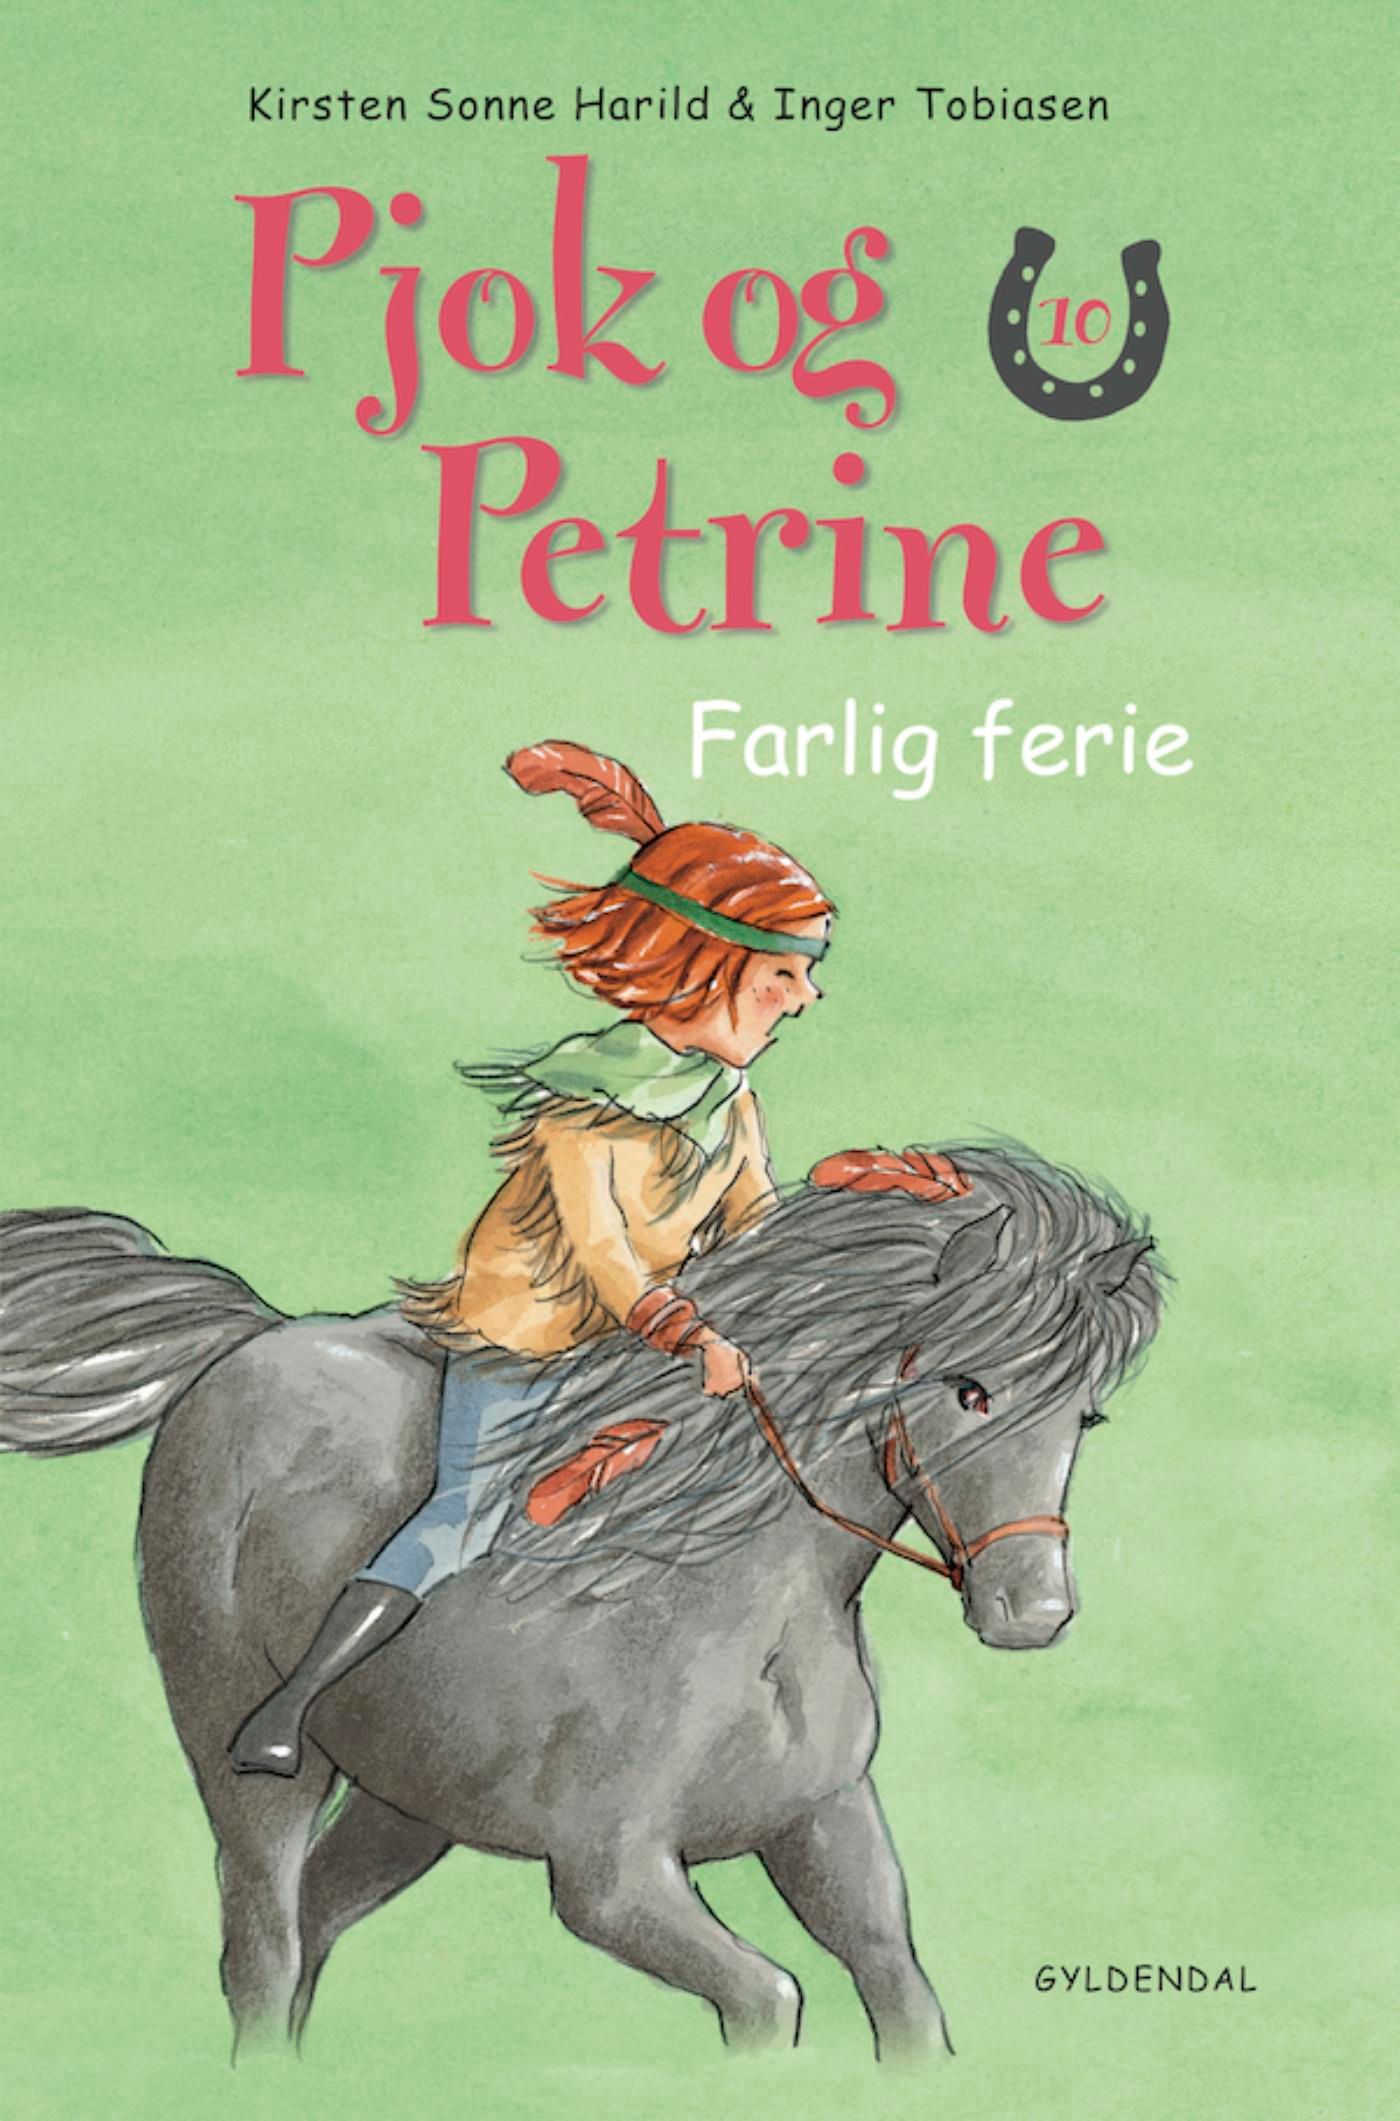 Pjok og Petrine - 10 Farlig ferie, eBook by Kirsten Sonne Harild